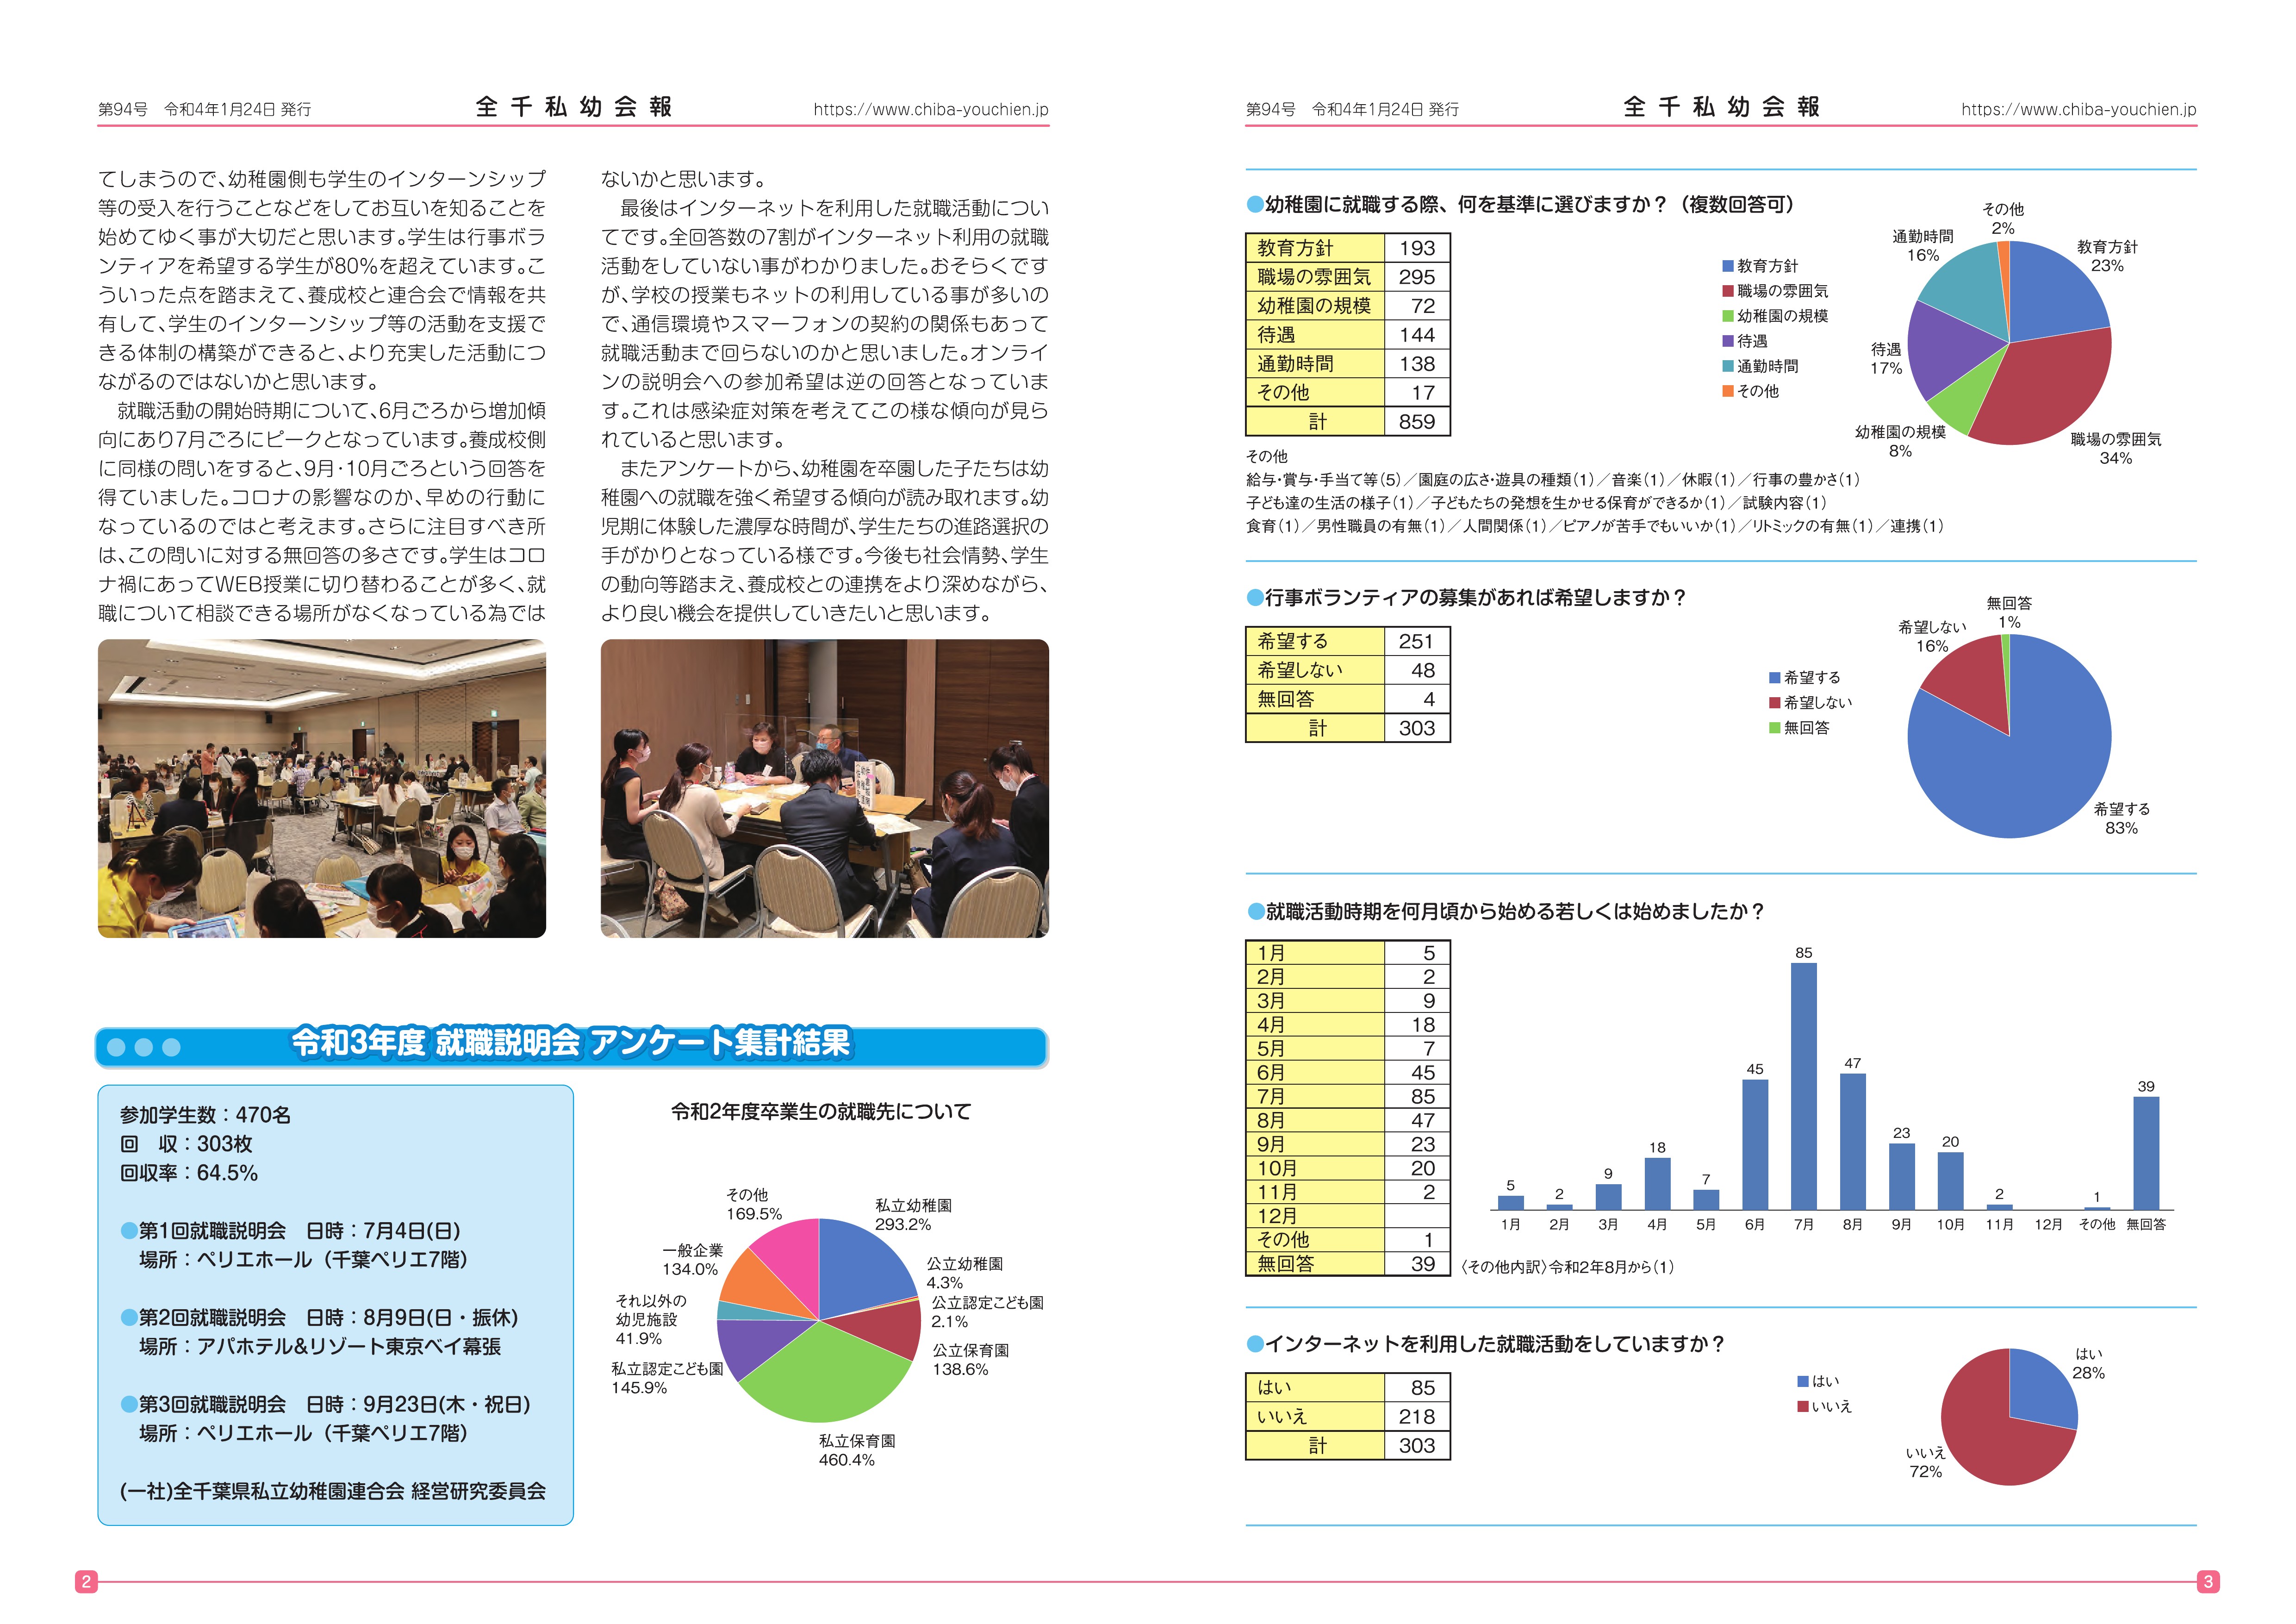 https://www.chiba-youchien.jp/news/%E5%85%A8%E5%8D%83%E7%A7%81%E5%B9%BC%E4%BC%9A%E5%A0%B194%E5%8F%B73%E6%A0%A10113_PAGE0001.jpg